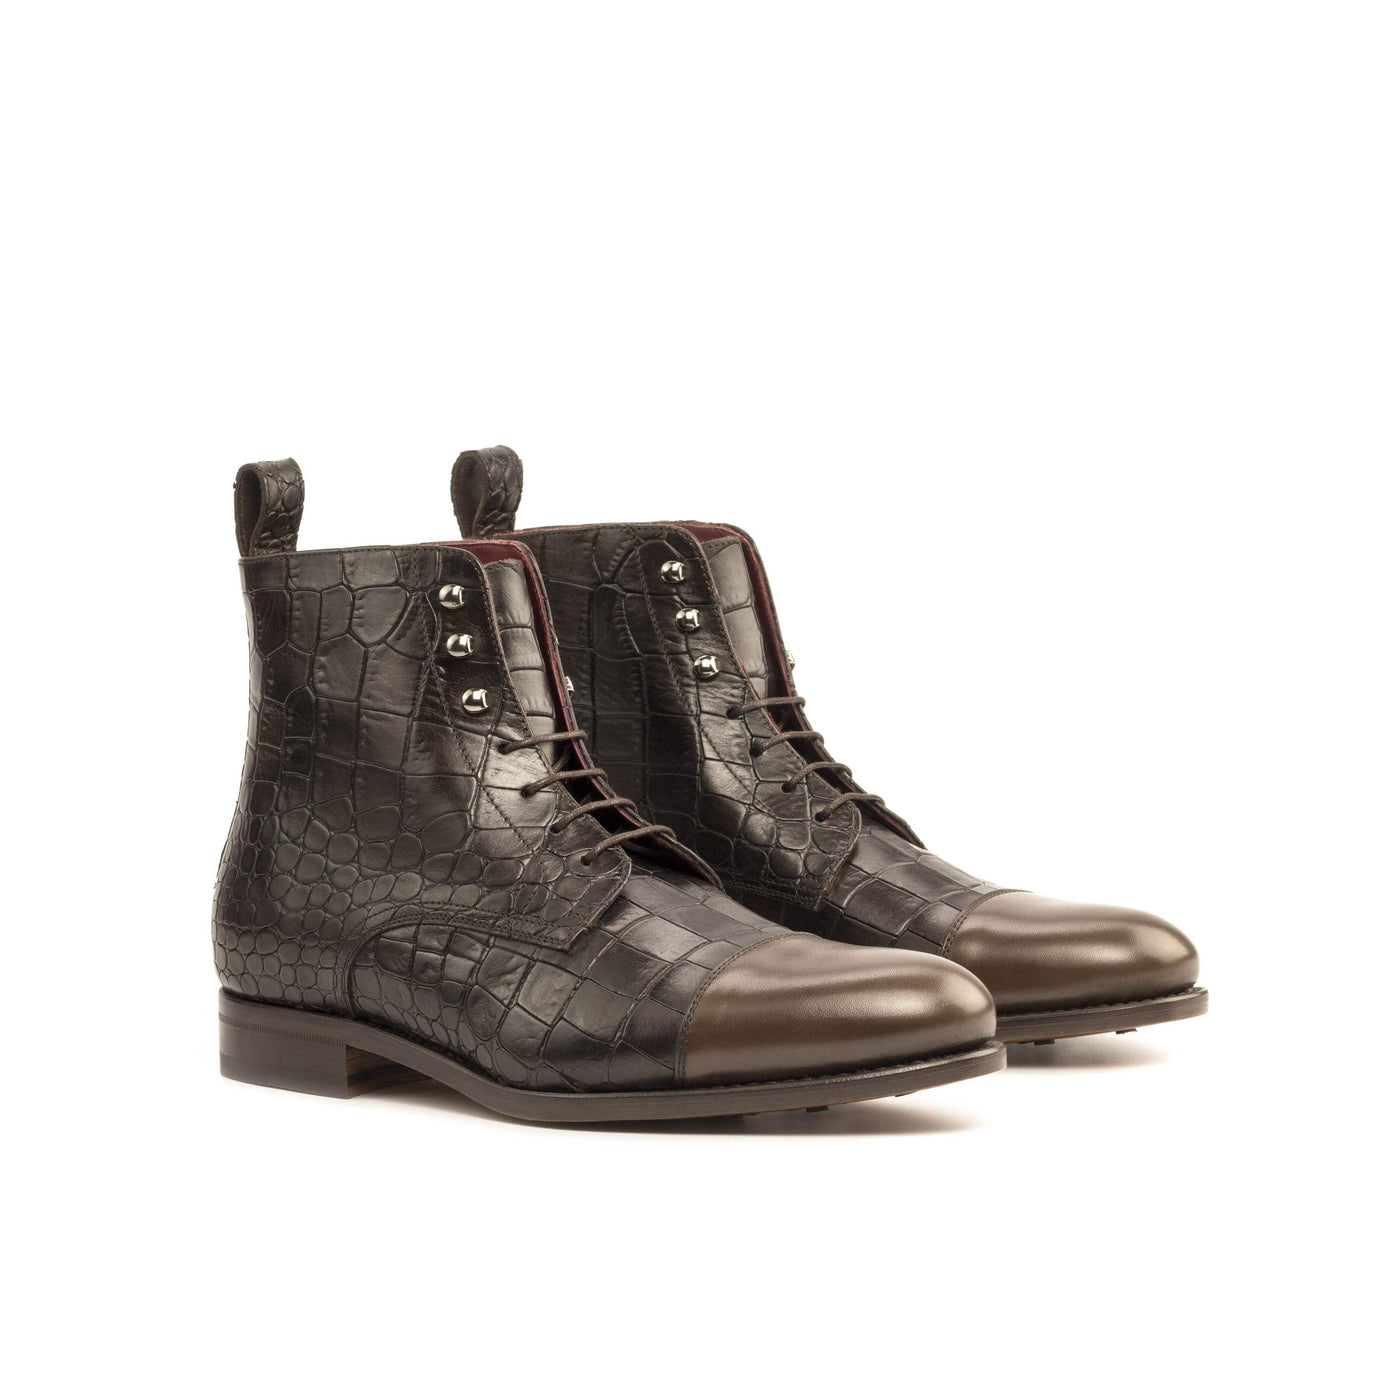 Men's Jumper Boots Leather Brown Dark Brown 5126 3- MERRIMIUM